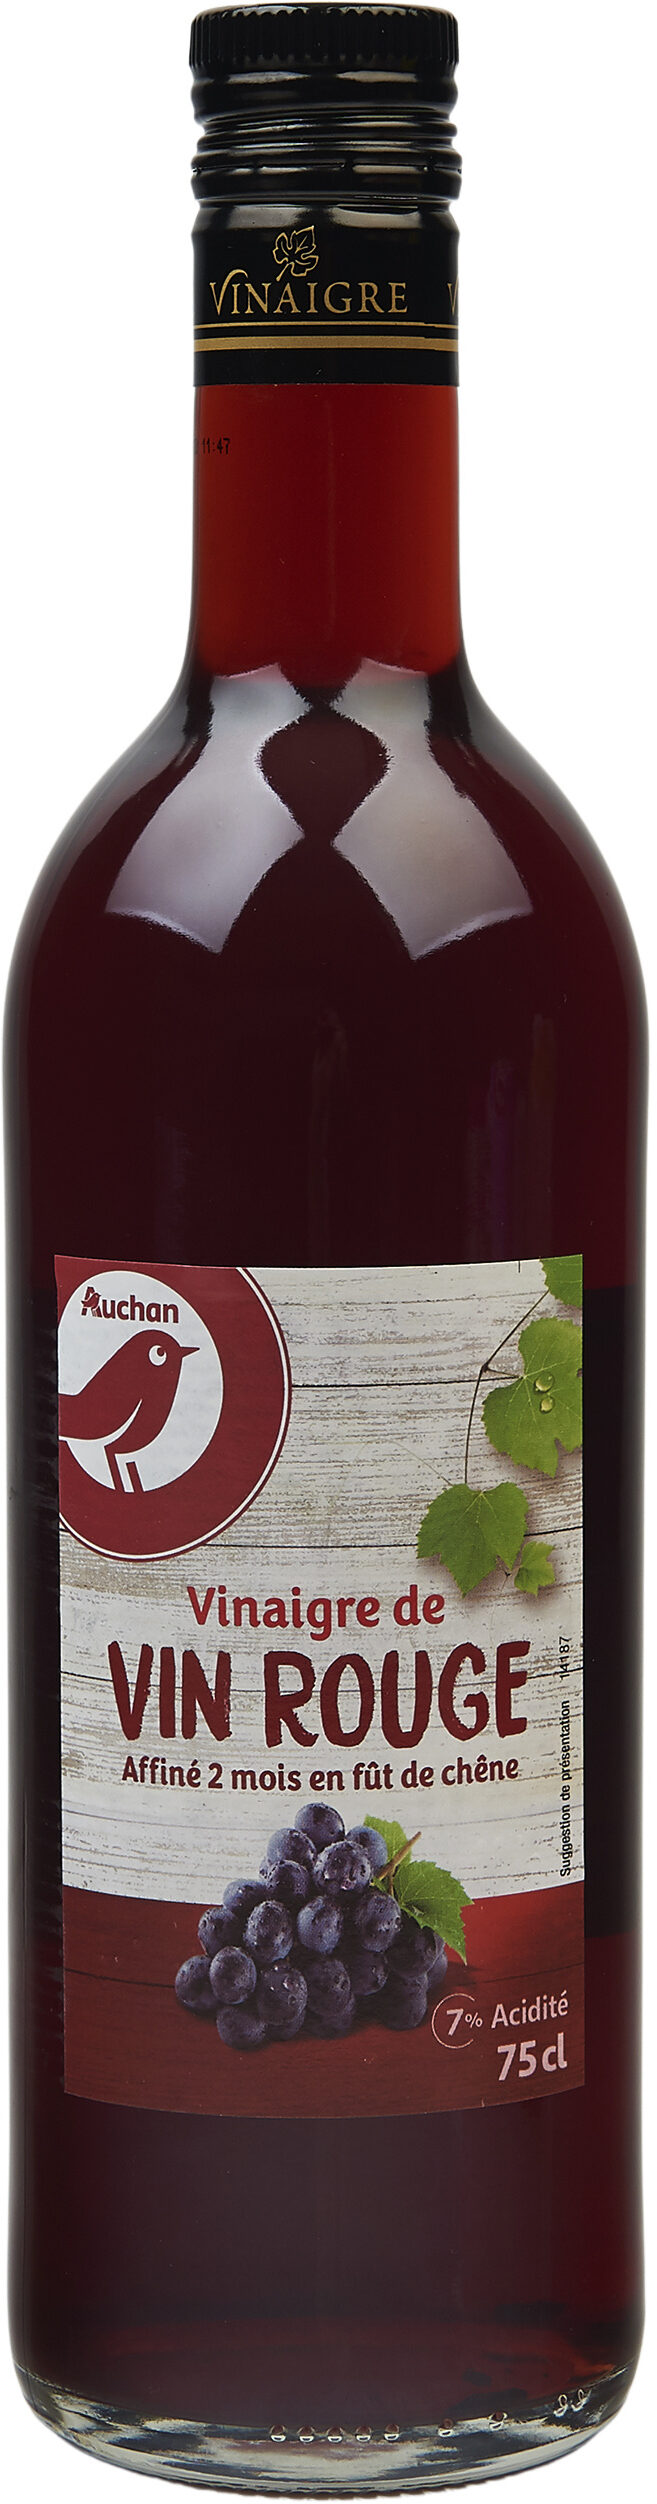 Vinaigre de vin rouge affiné 2 mois en fût de chêne 7% d'acidité - Produit